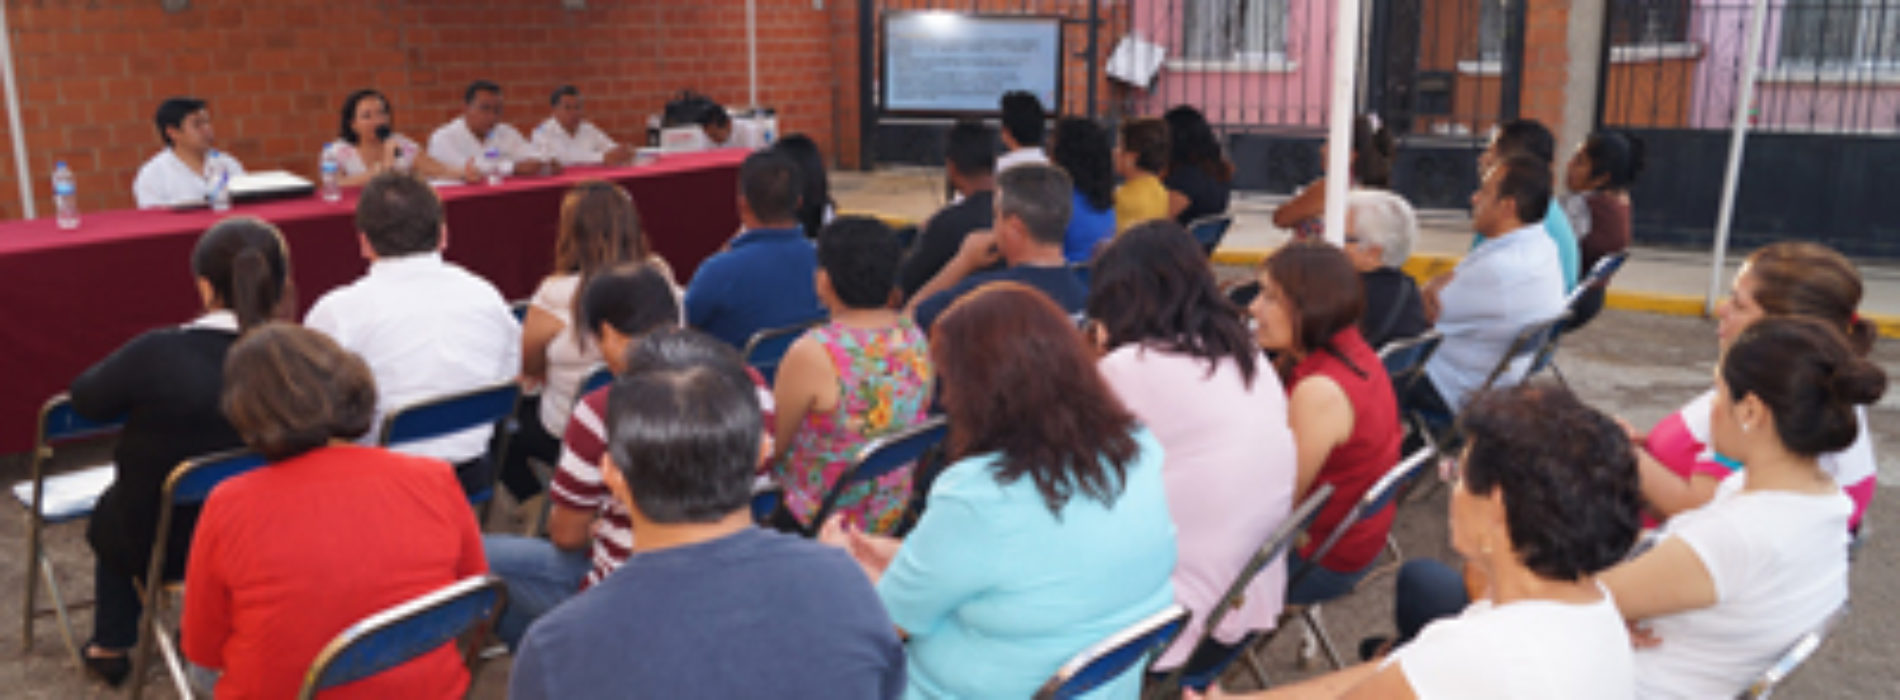 Presenta ICEO avances y logros ante representantes de fraccionamientos del municipio de Santa Cruz Xoxocotlán